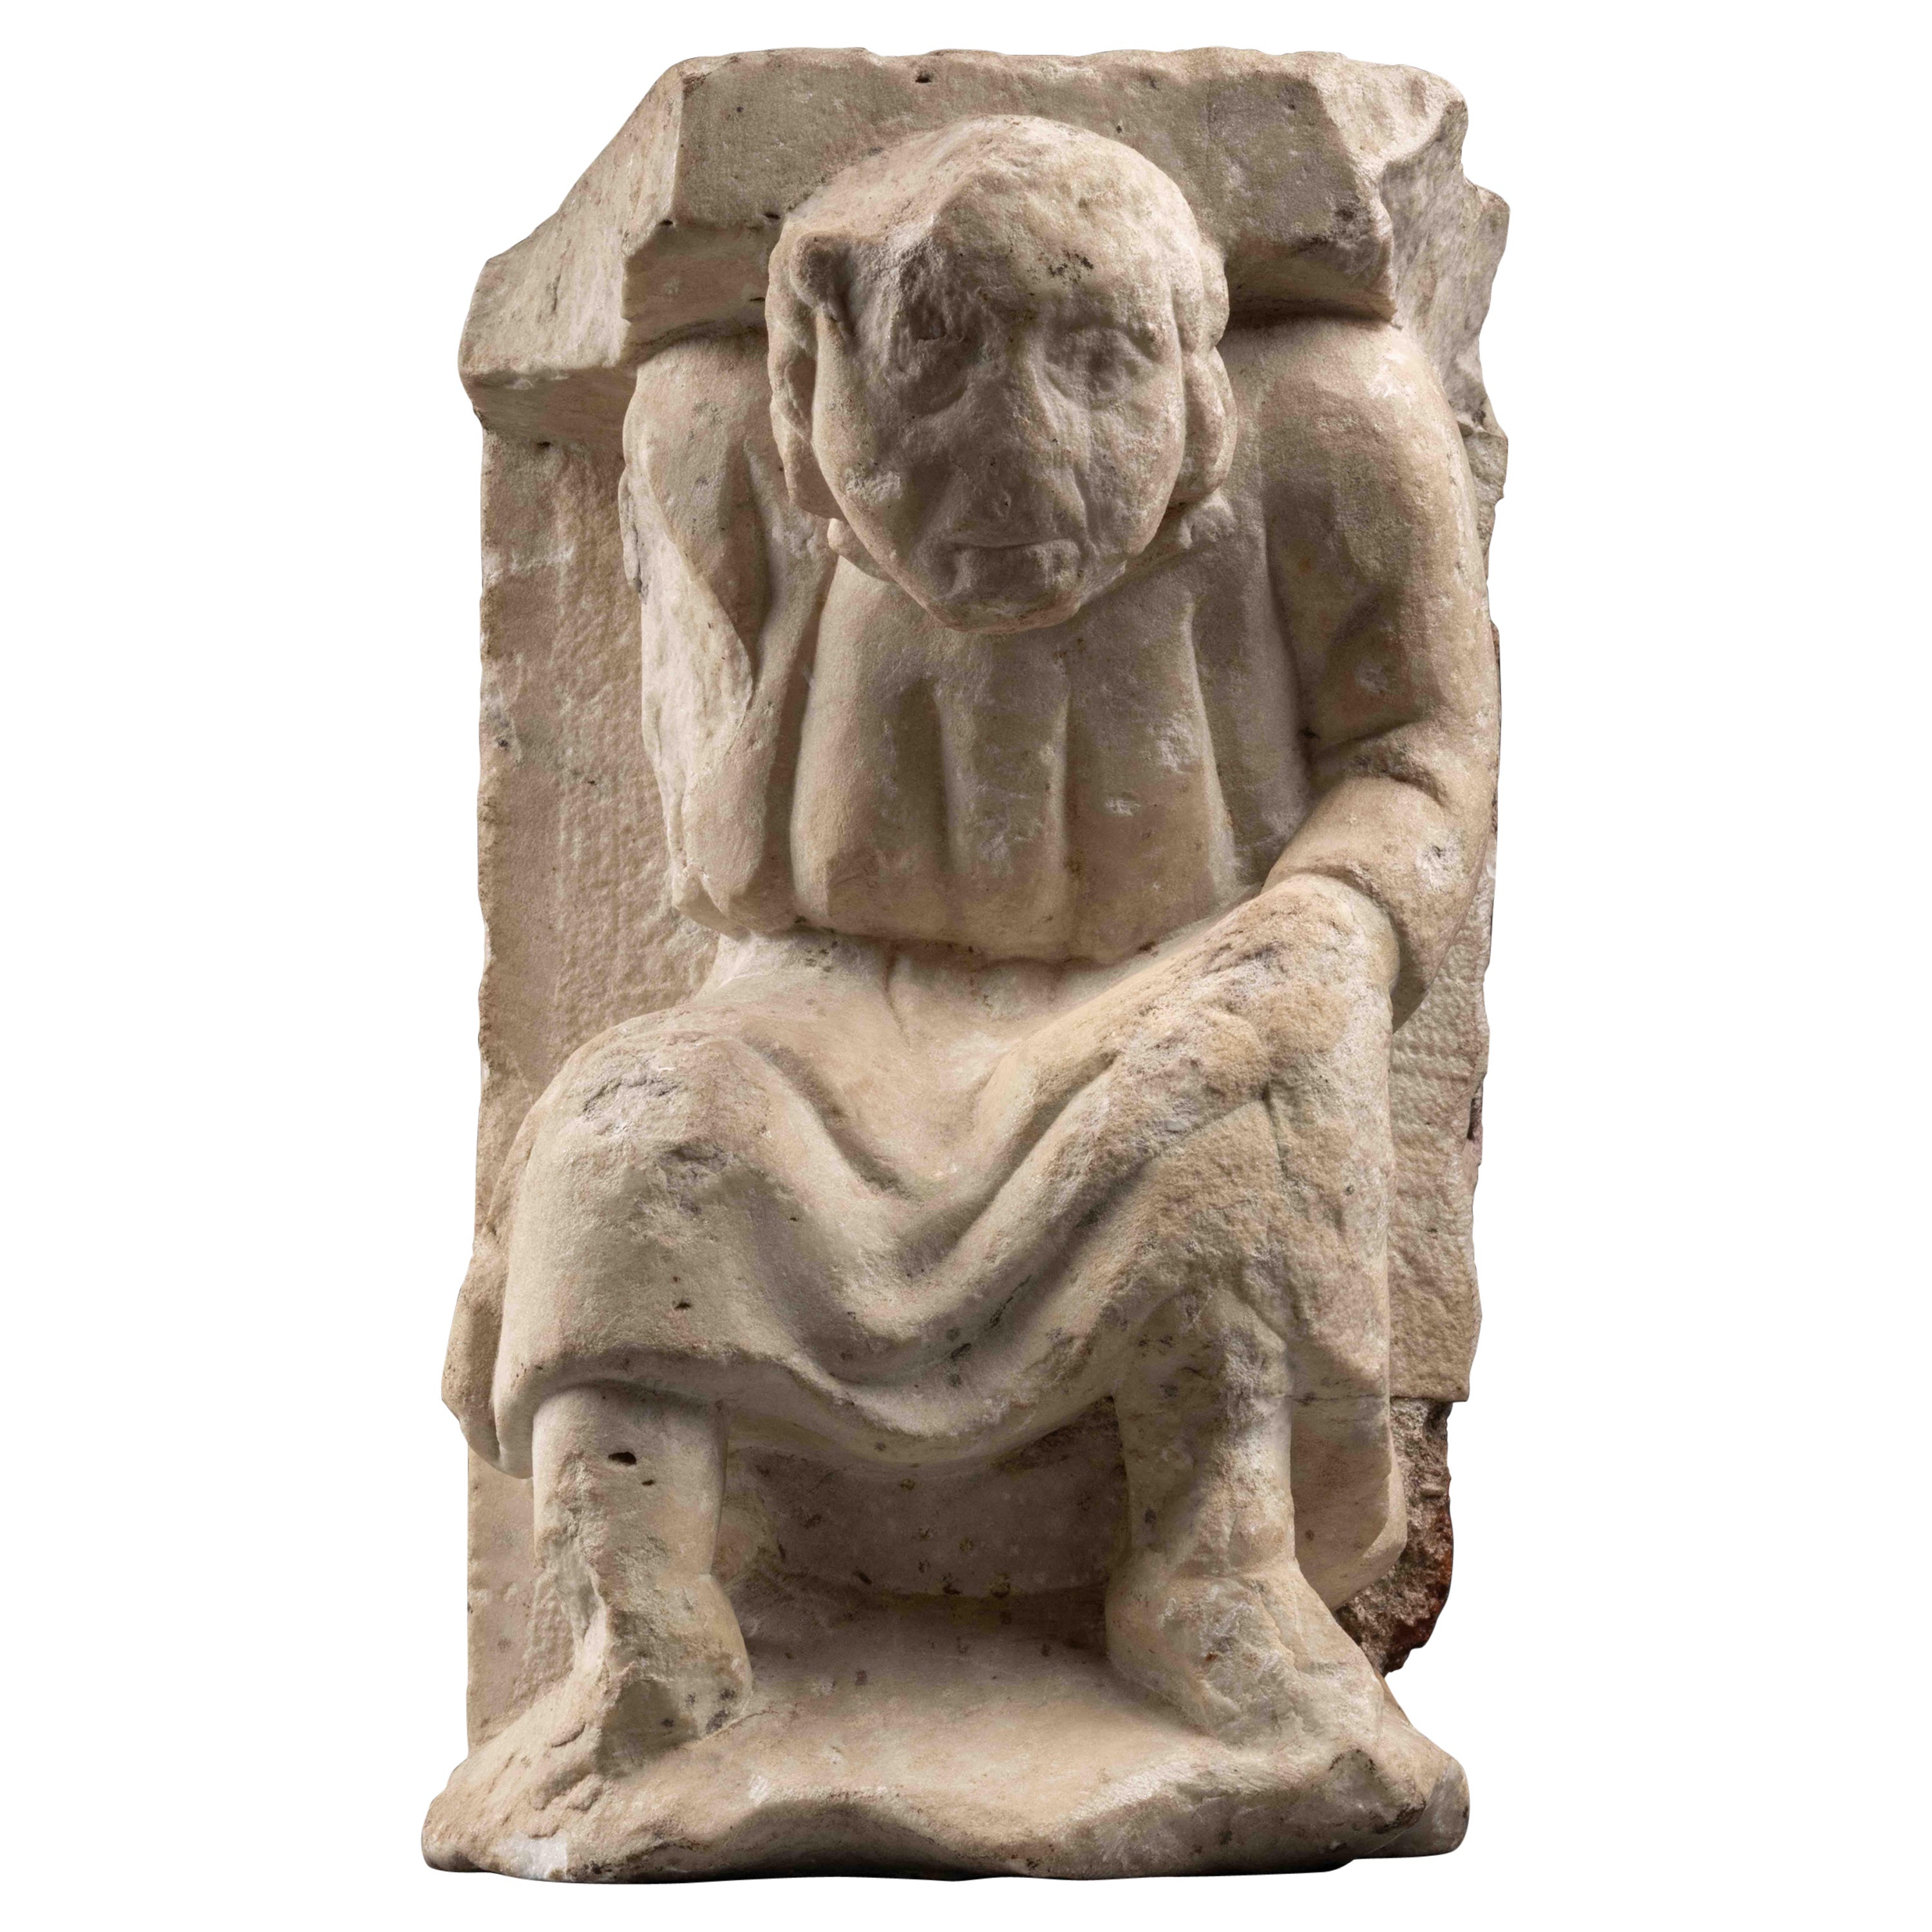 Telamon romain - Italie du Nord, fin du 12e siècle (marbre romain réemploié)